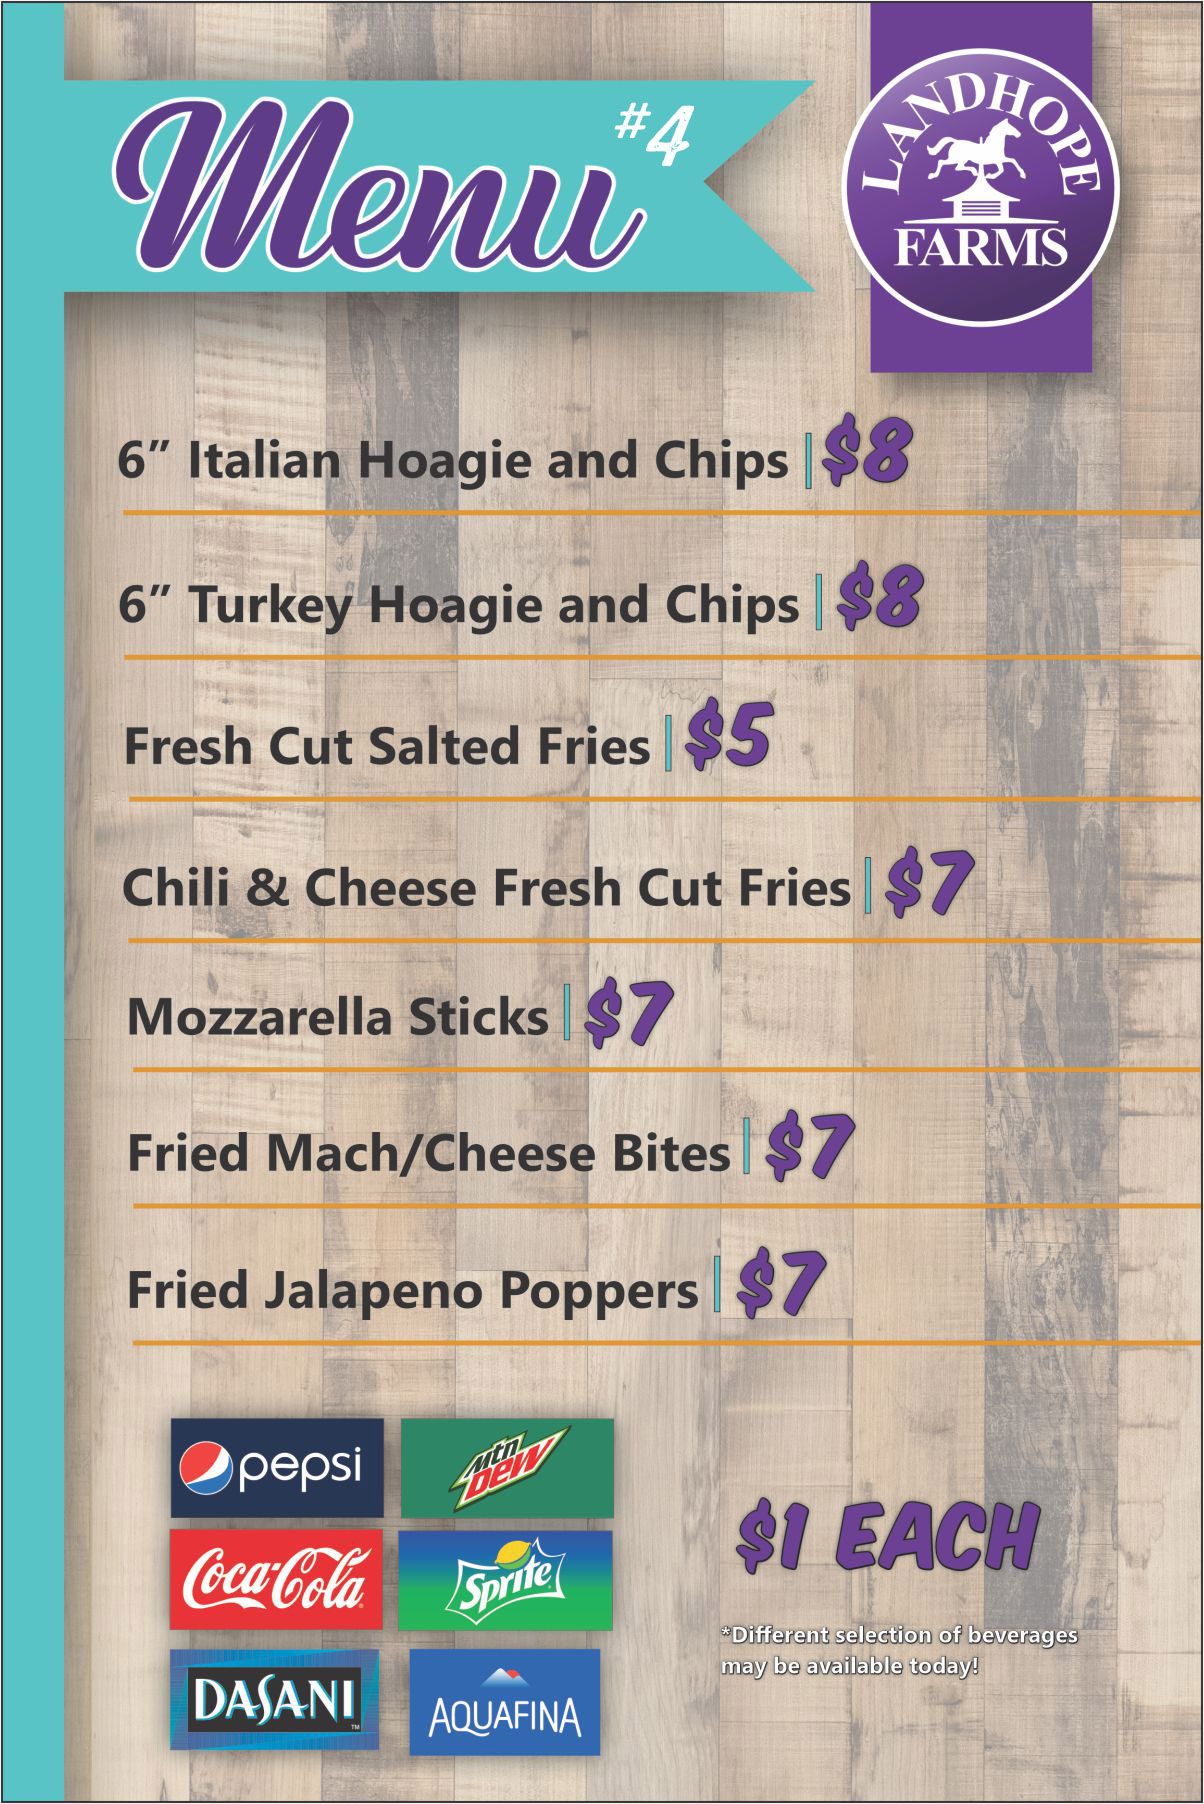 Landhope Food truck menu 4